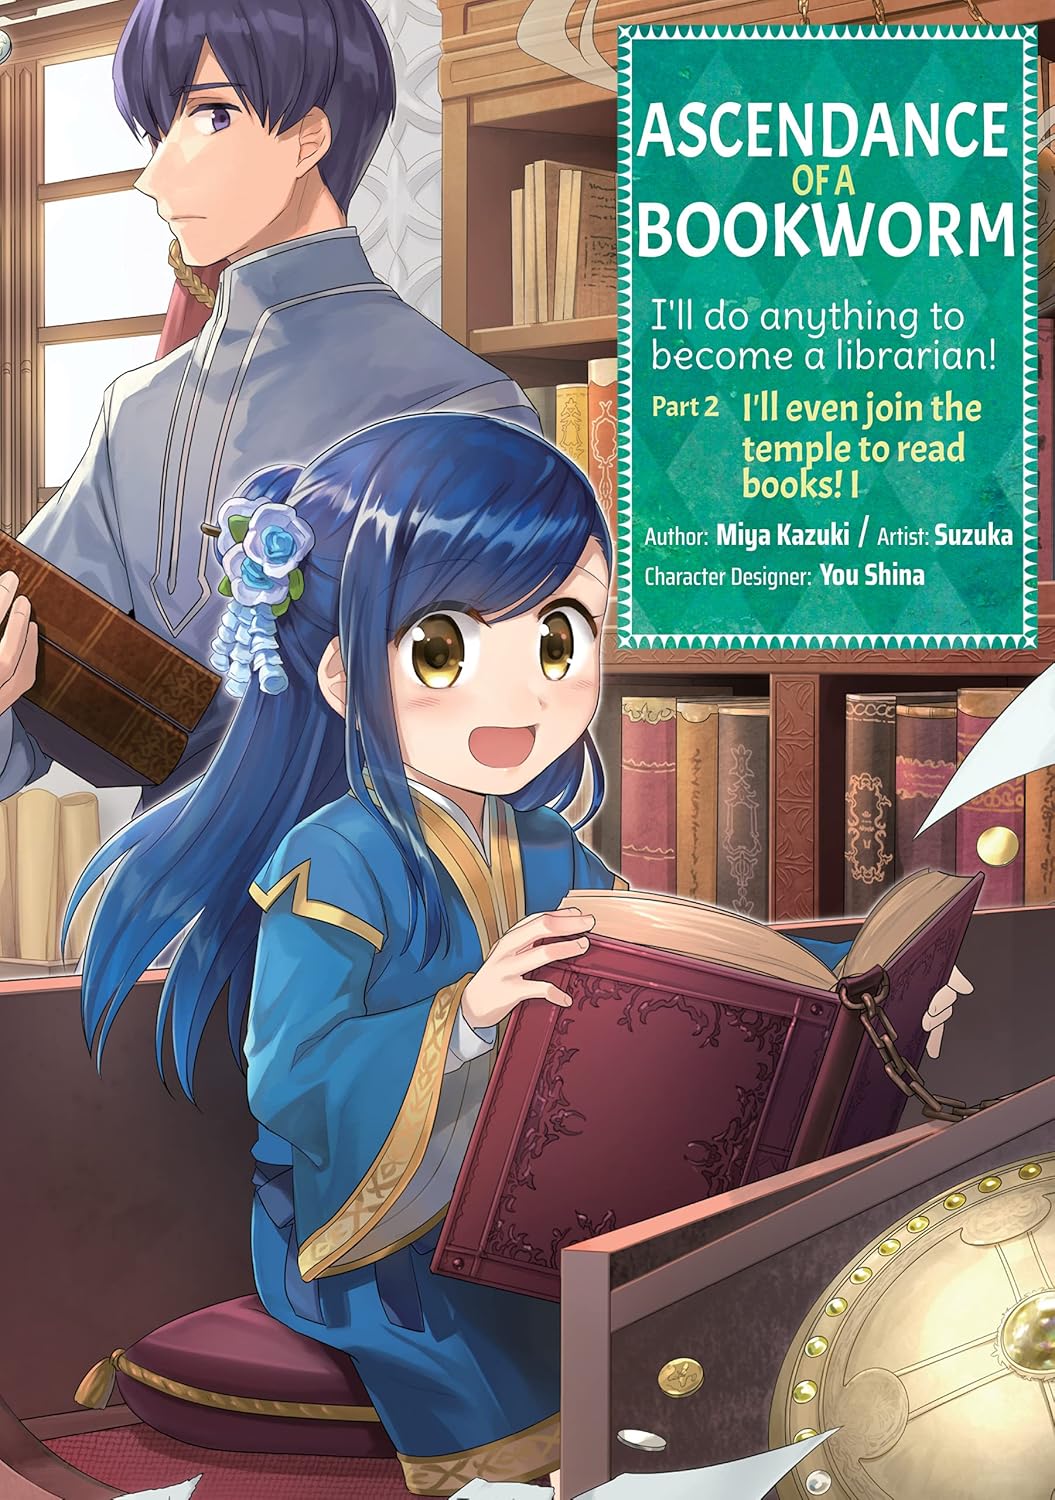 Ascendance of a Bookworm Part 2 Volume 1